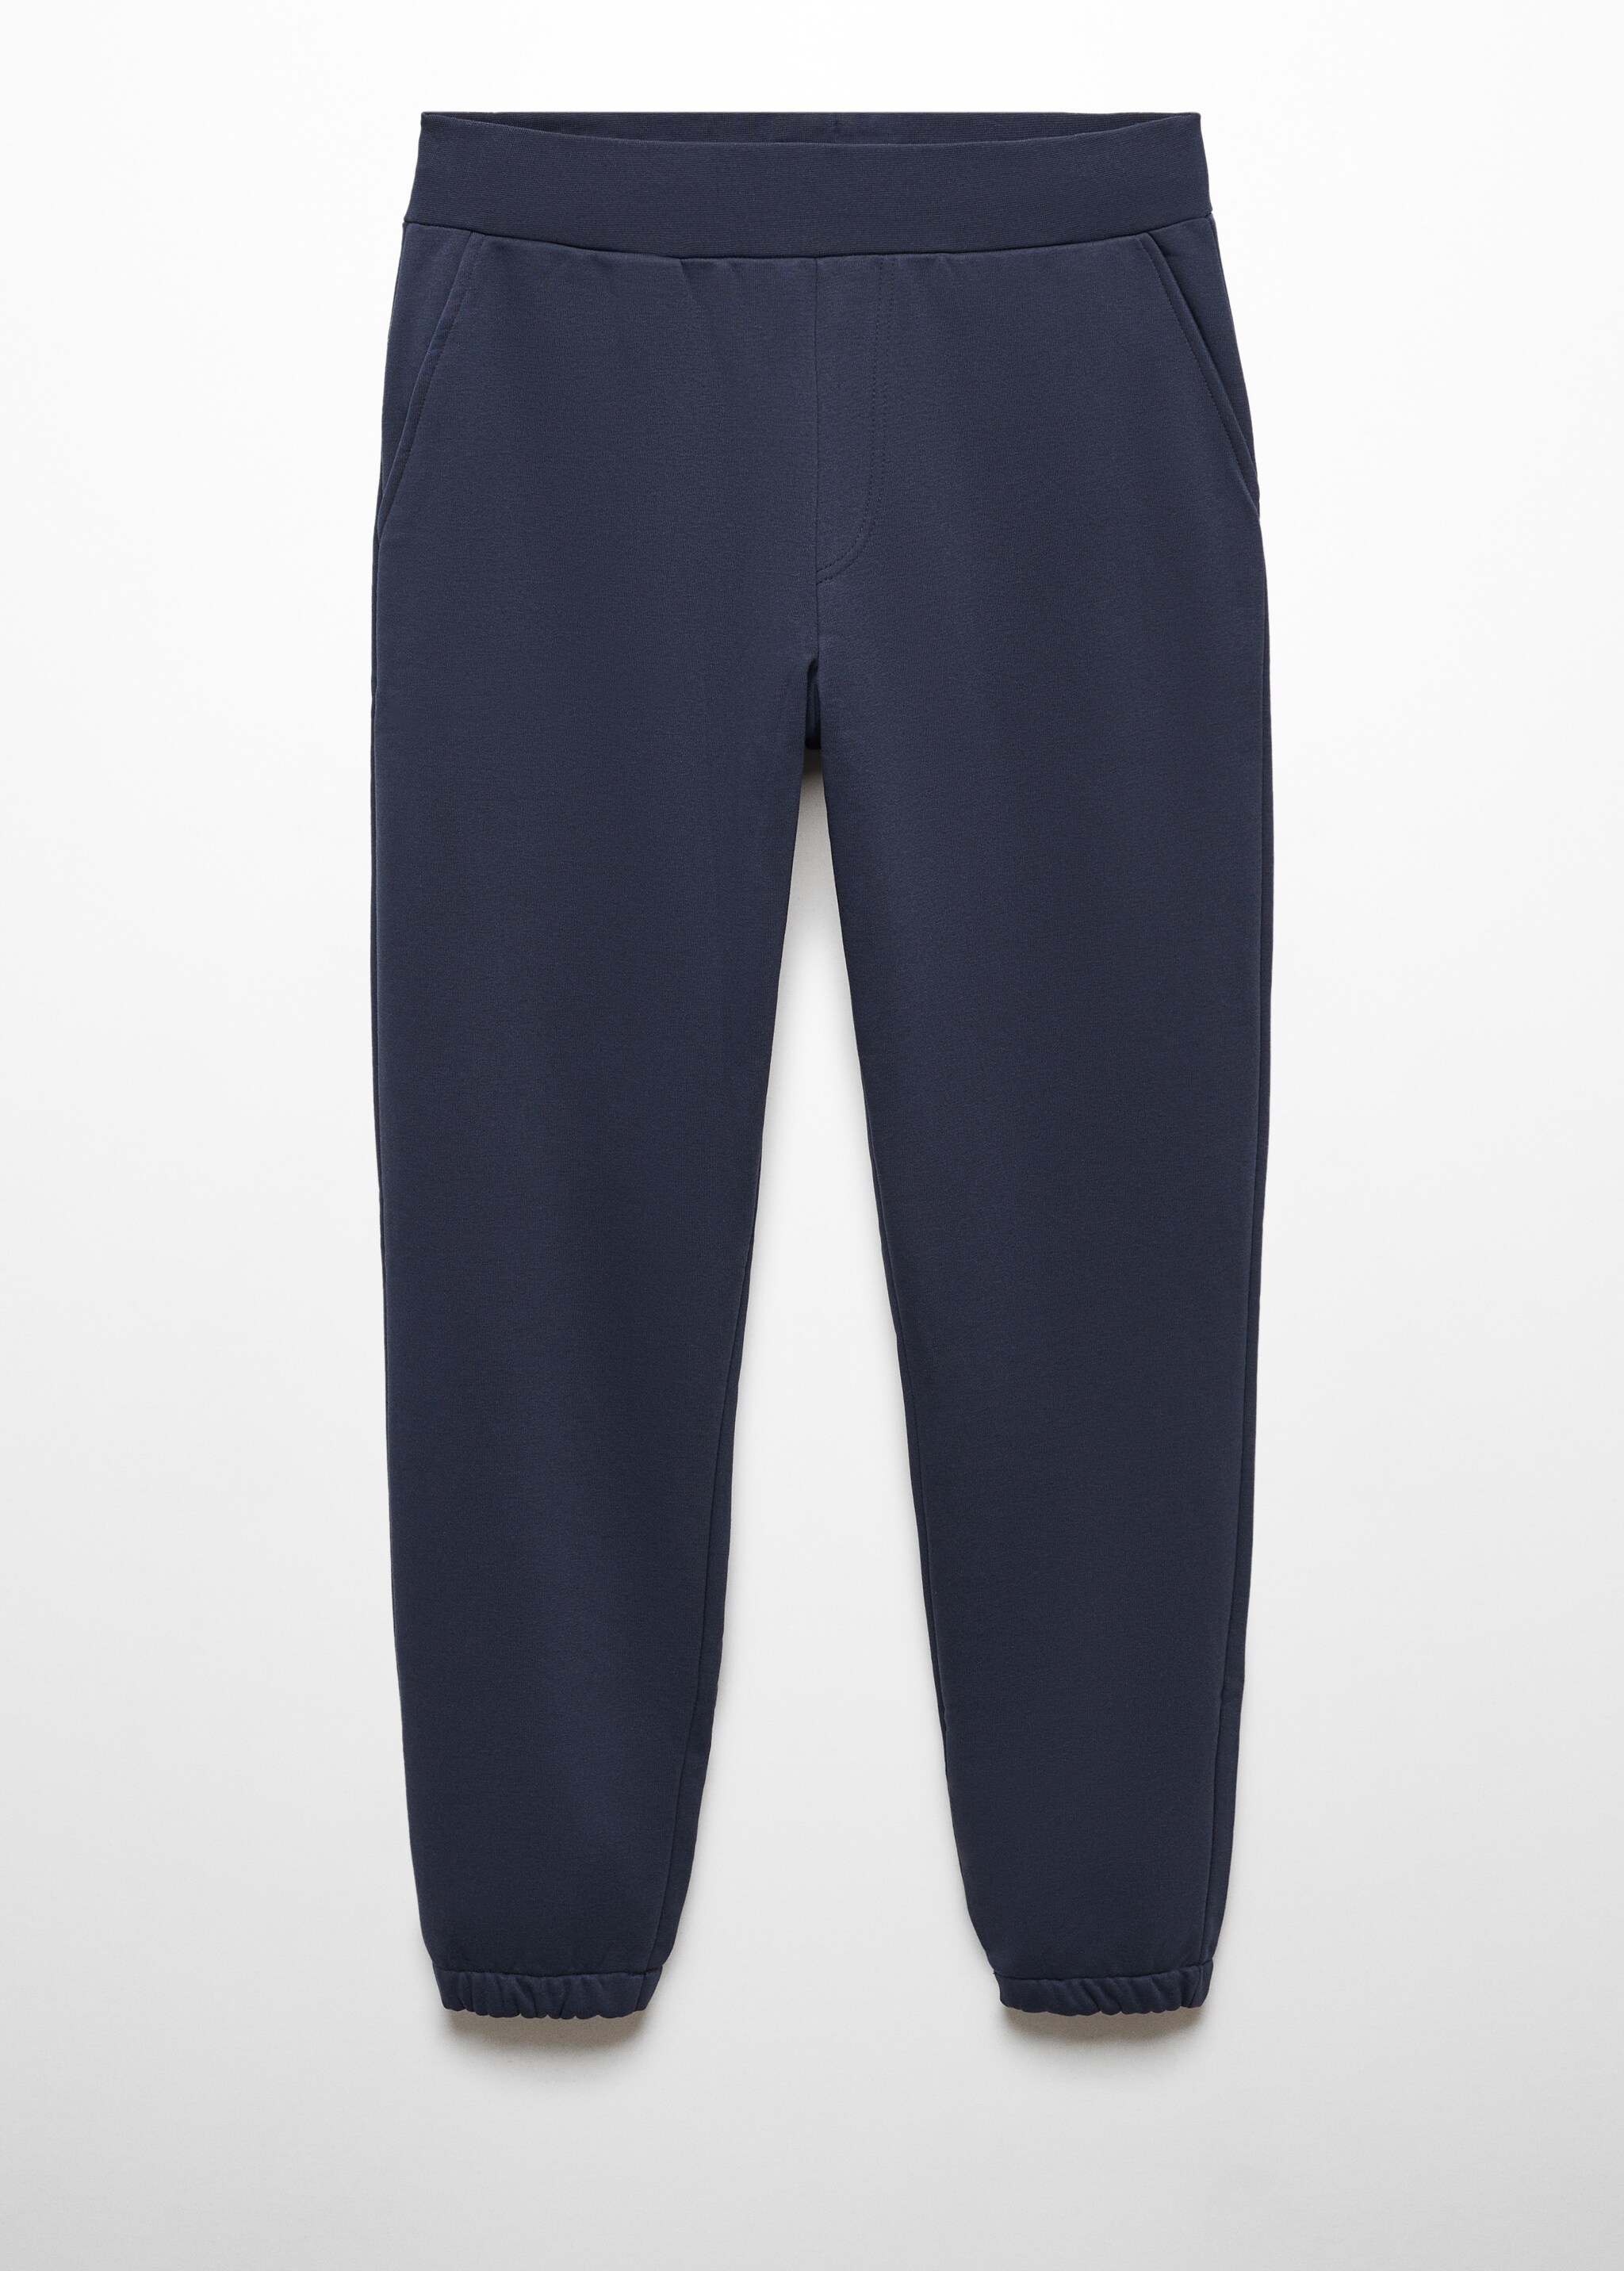 Cotton jogger-style trousers - Προϊόν χωρίς μοντέλο